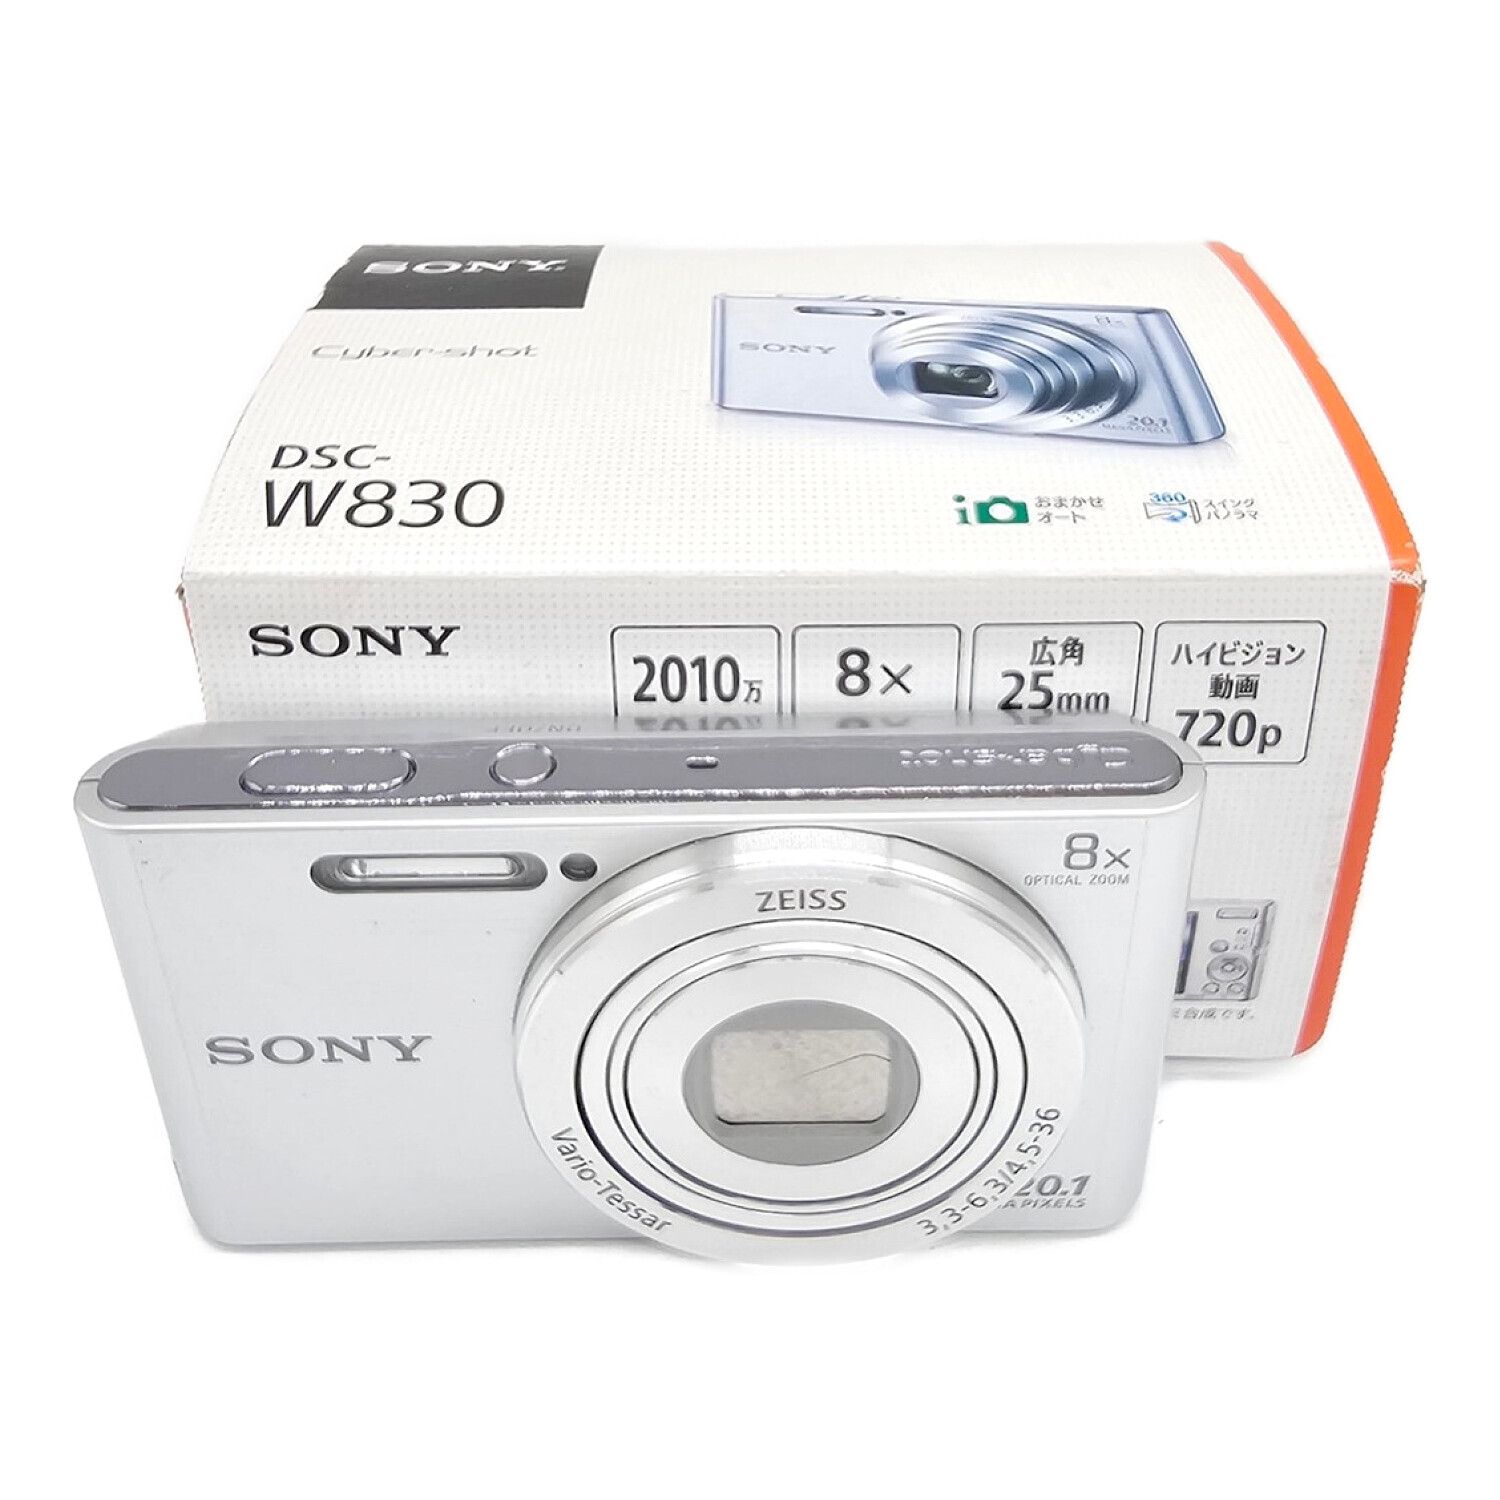 SONY (ソニー) コンパクトデジタルカメラ 17年発売モデル DSC-W830